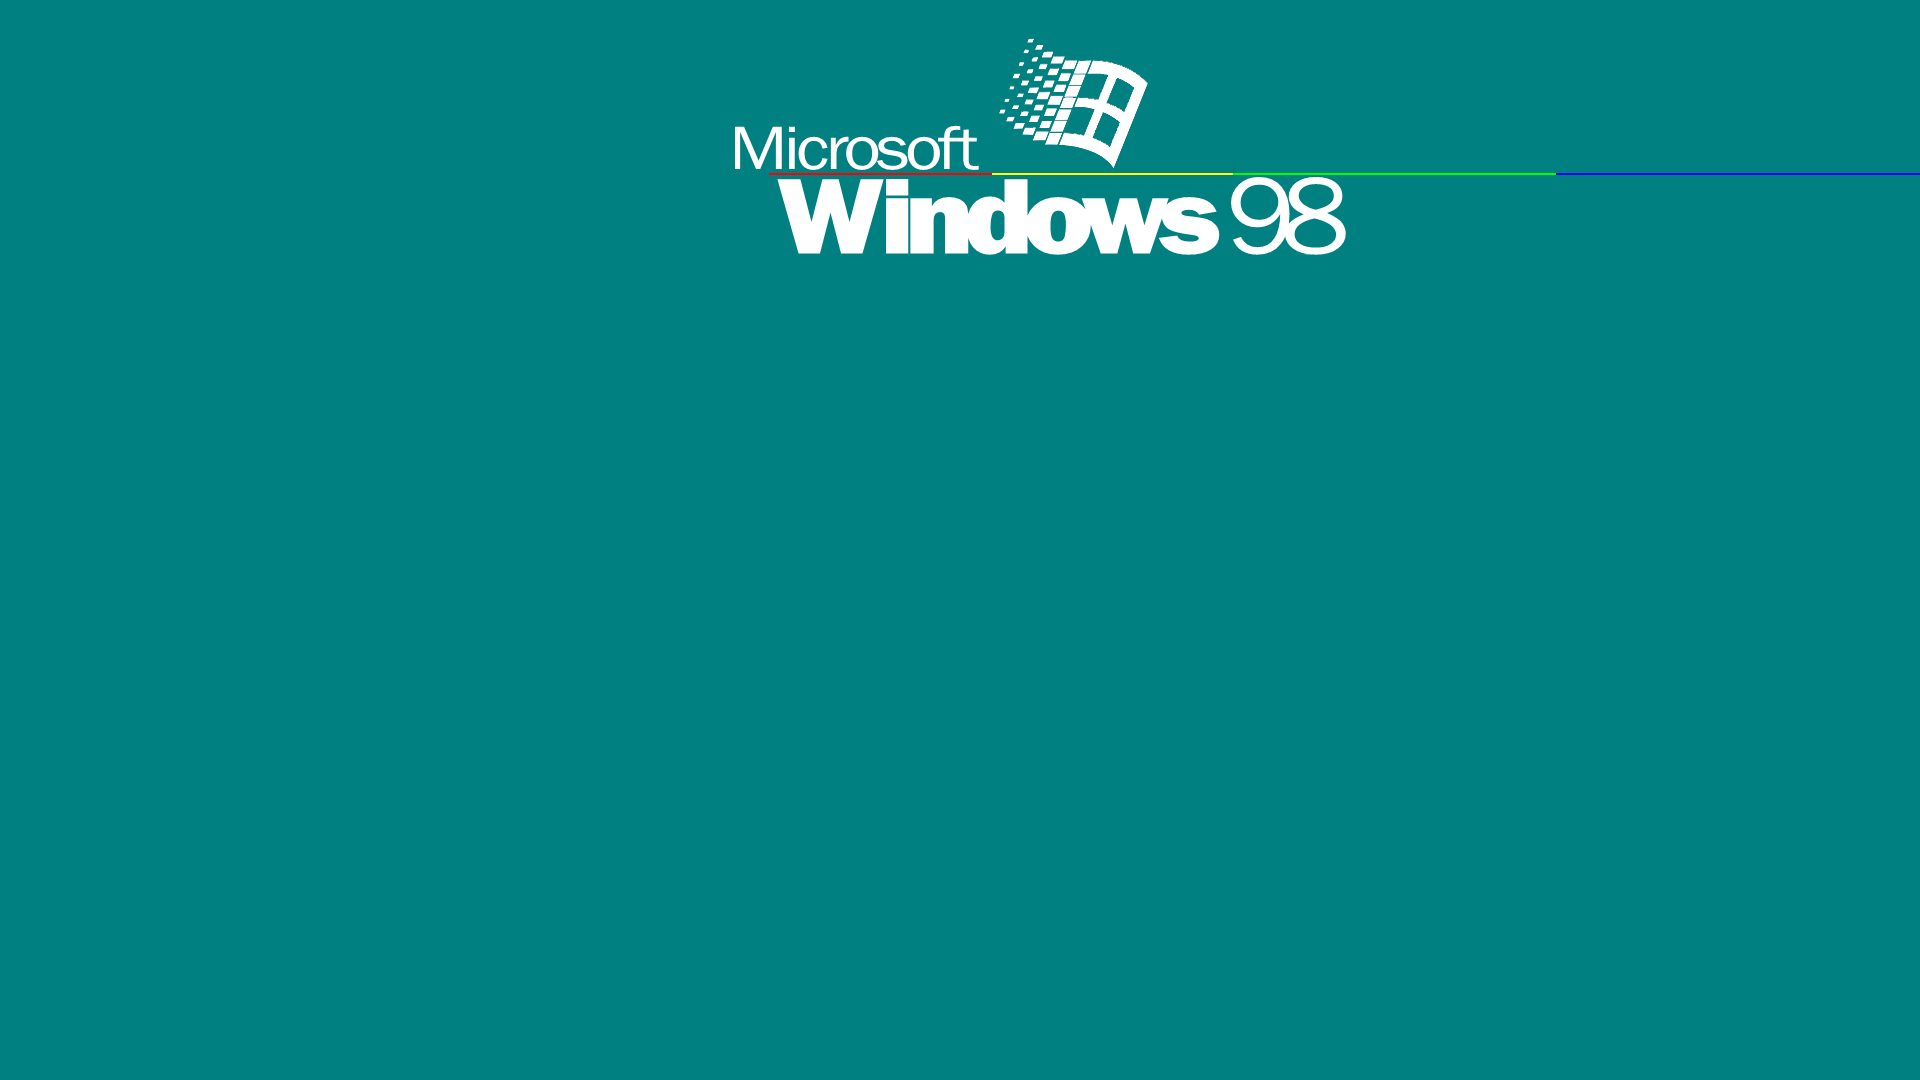 Bạn có nhớ những ngày đầu tiên sử dụng máy tính của mình với hình nền mặc định Windows 98? Hãy quay lại thời điểm đó với một số hình ảnh độc đáo về hình nền này. Bạn sẽ cảm thấy tràn đầy nỗi nhớ khi thấy hình nền mặc định này.